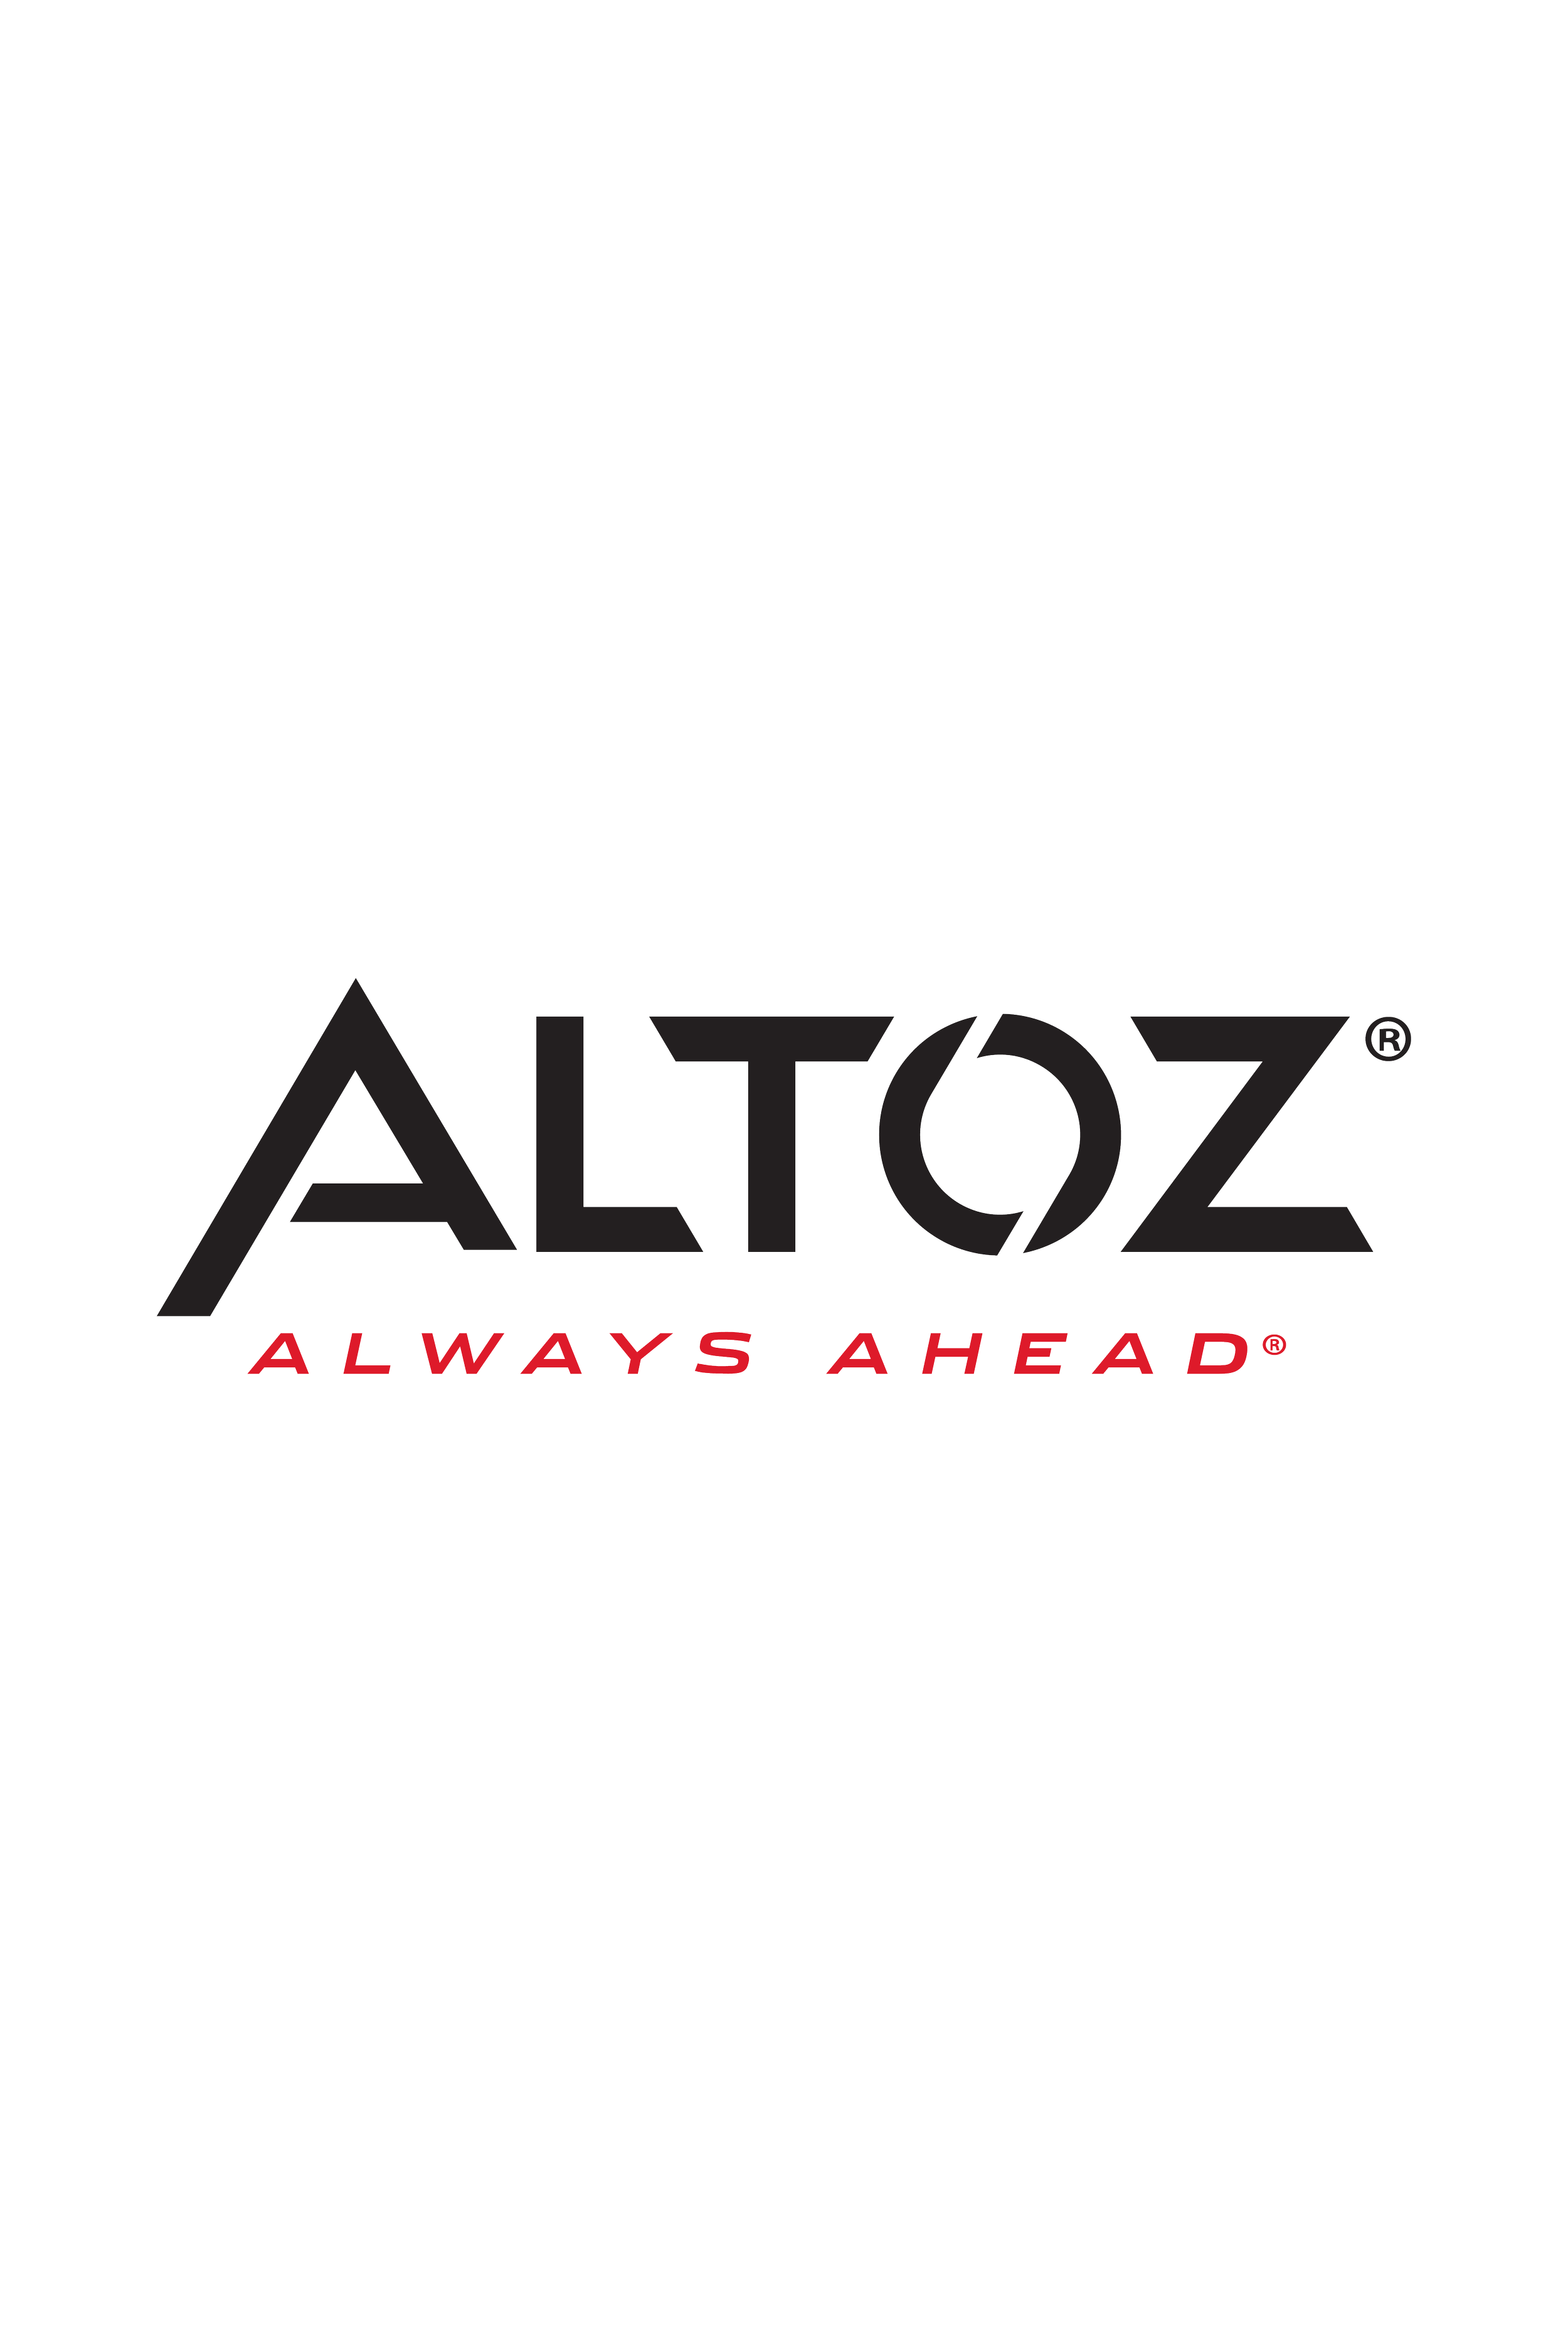 Altoz Commercial- Grade Mowers